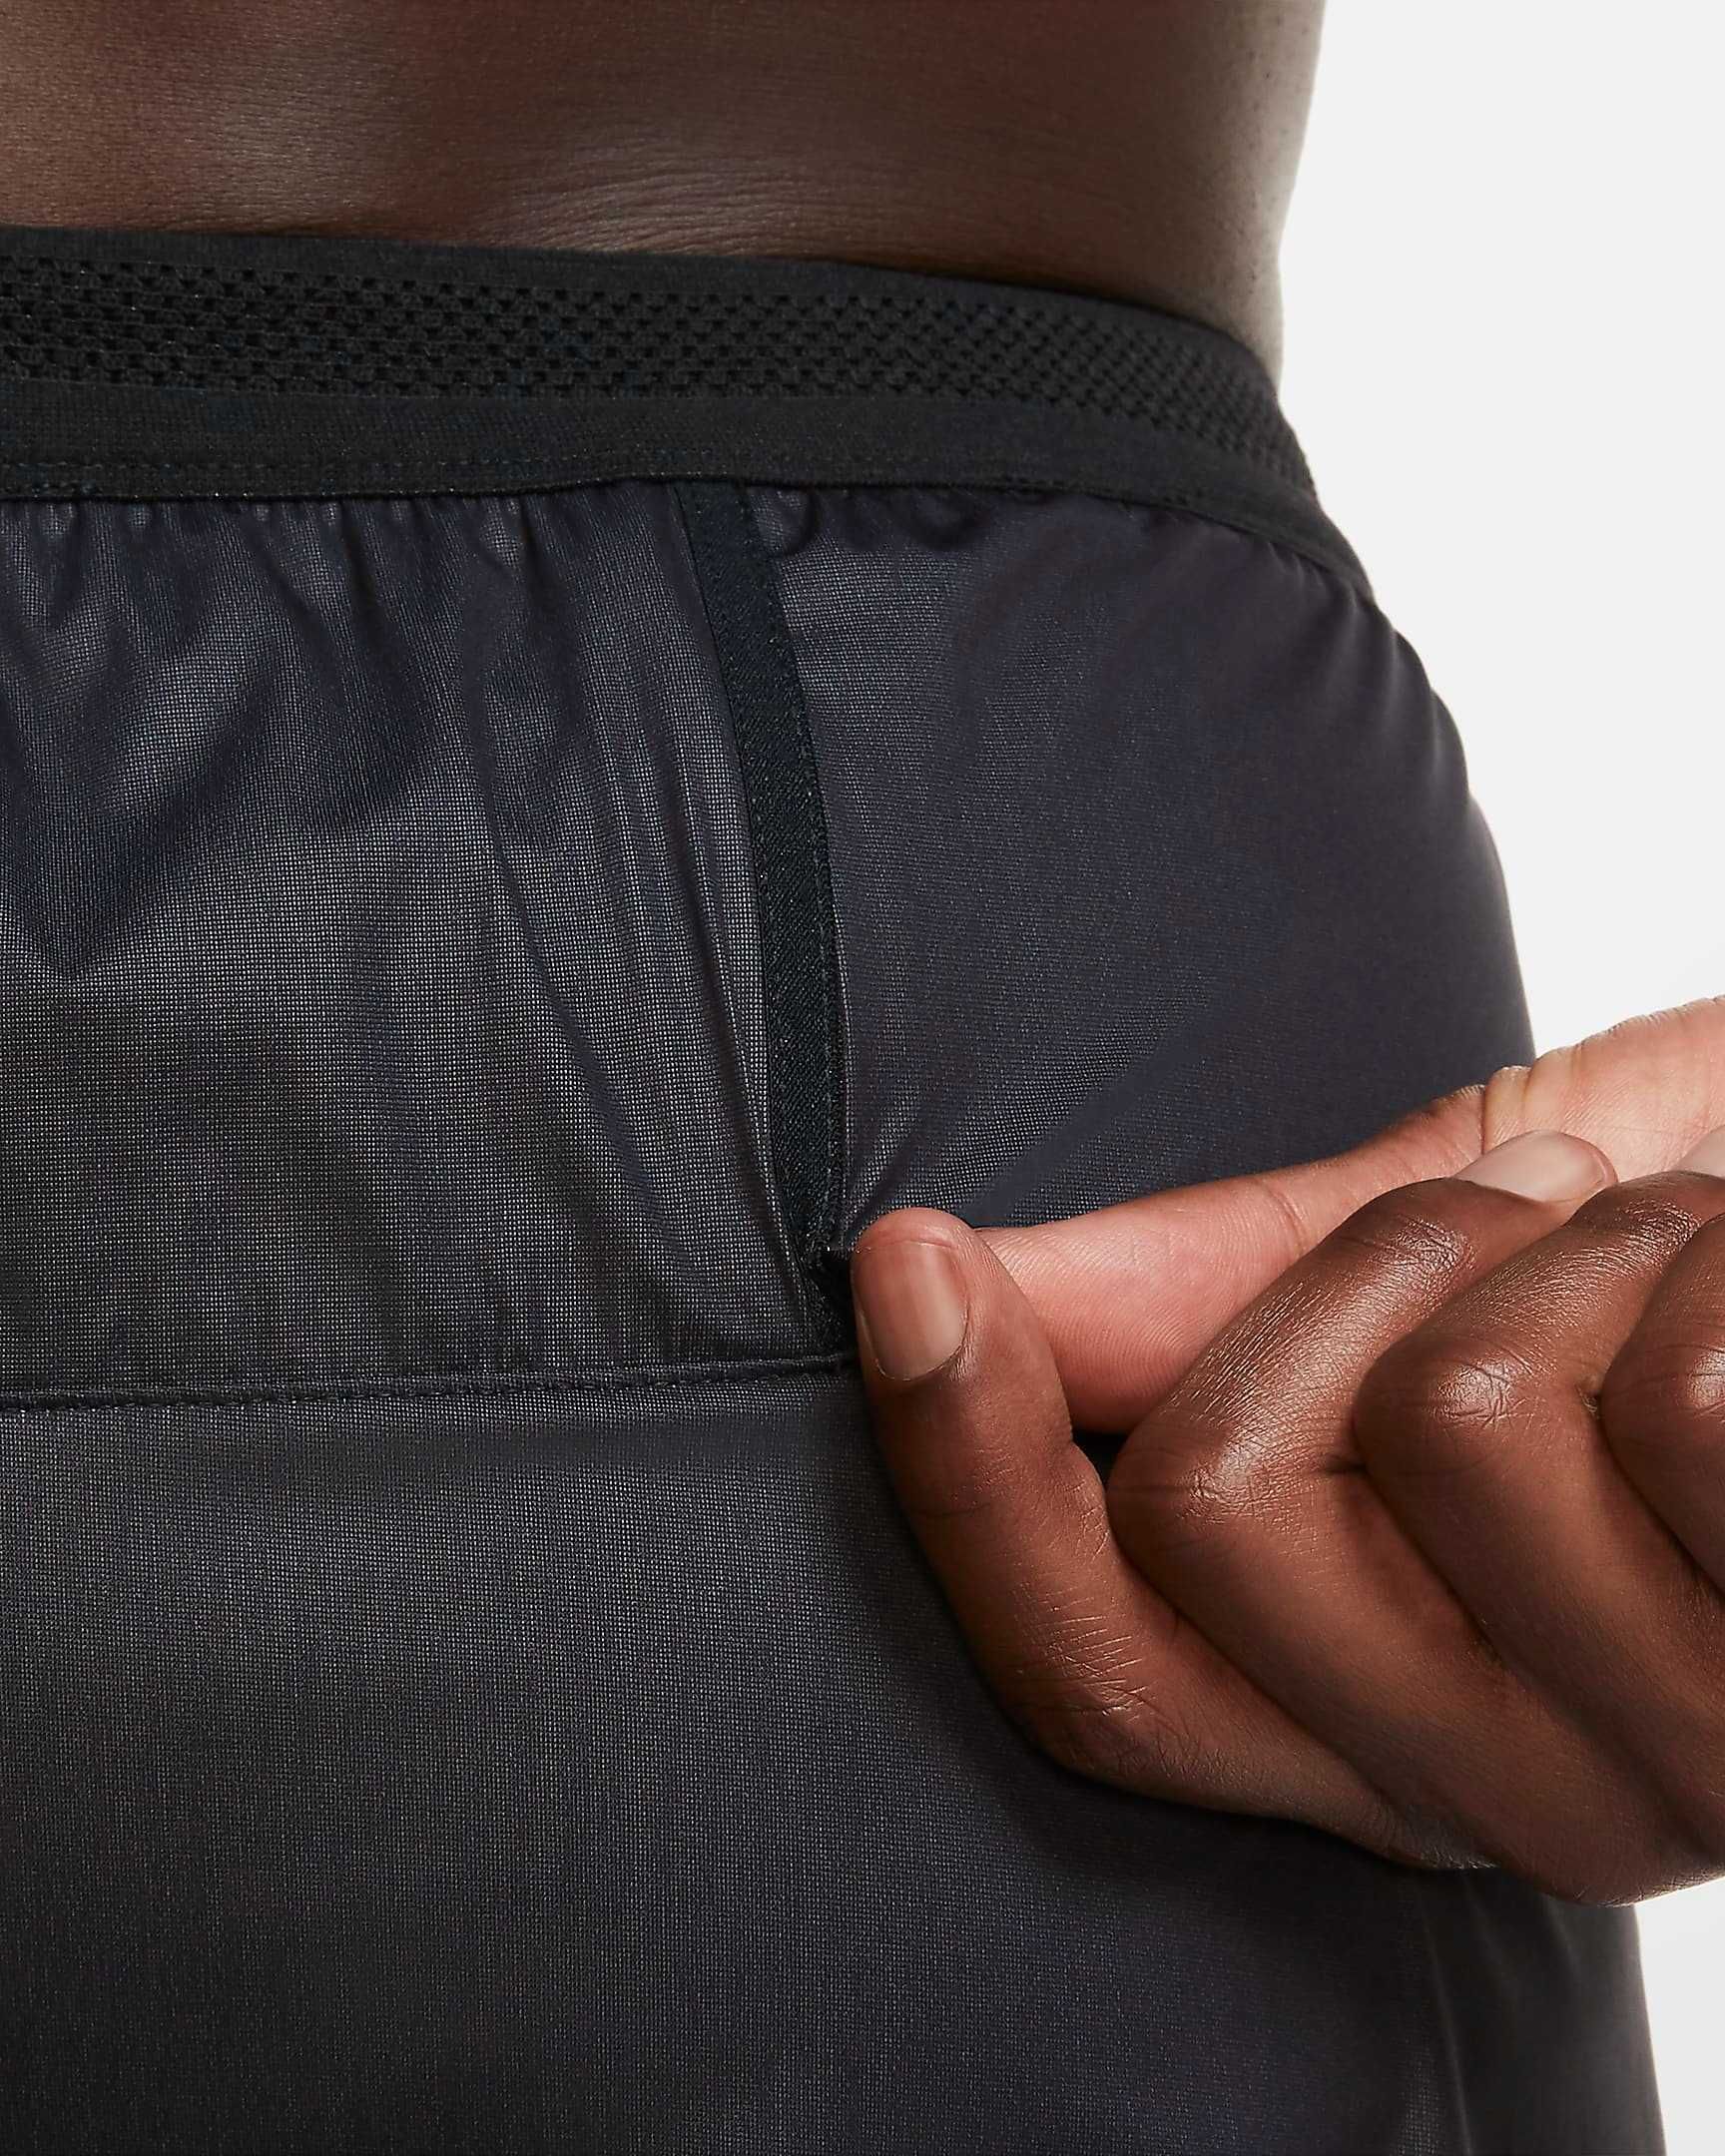 Nike Swift Shield spodnie do biegania rozmiar M